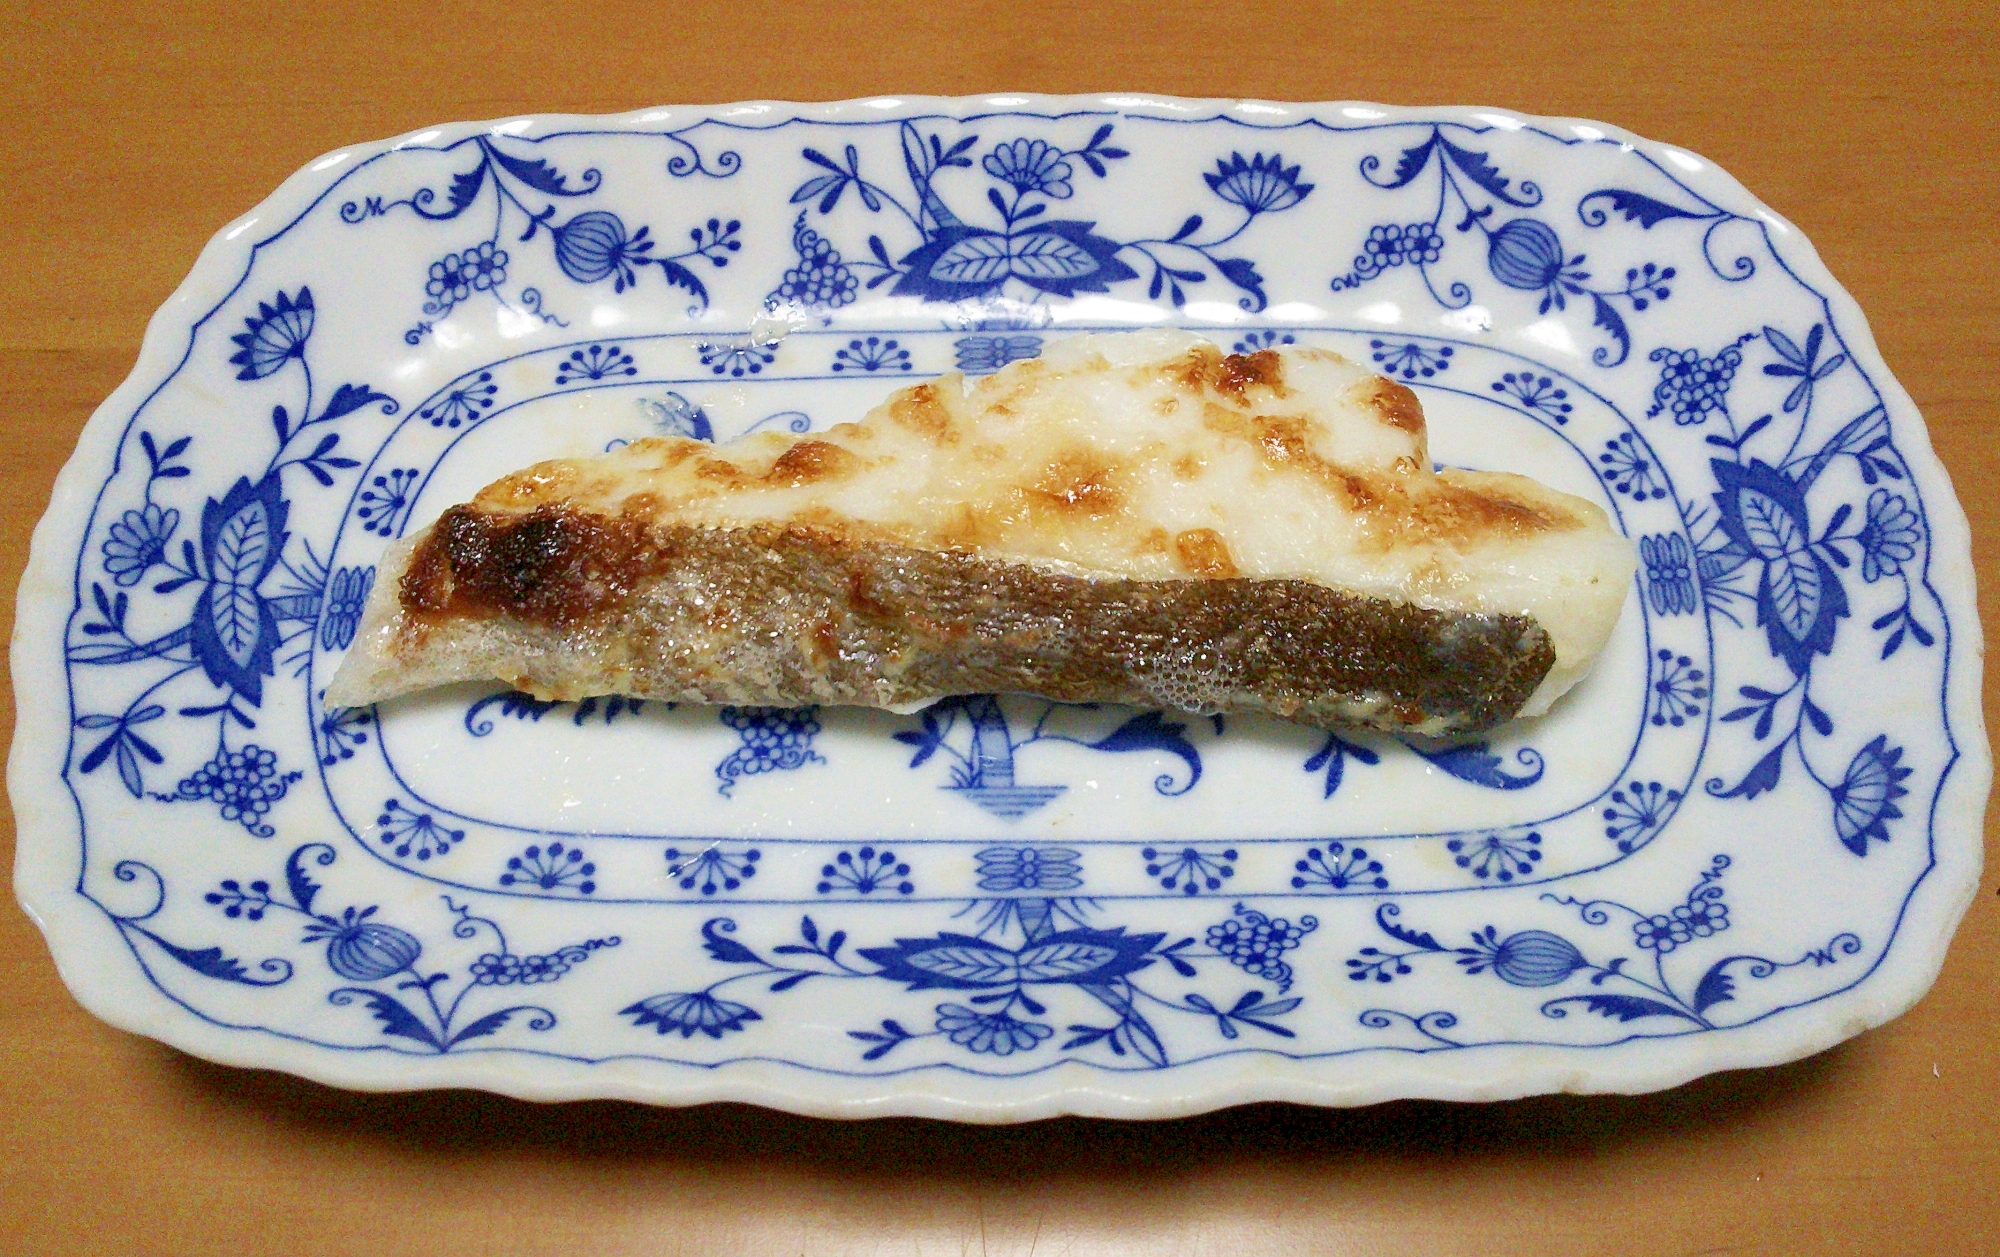 鱈のマヨネーズ焼き